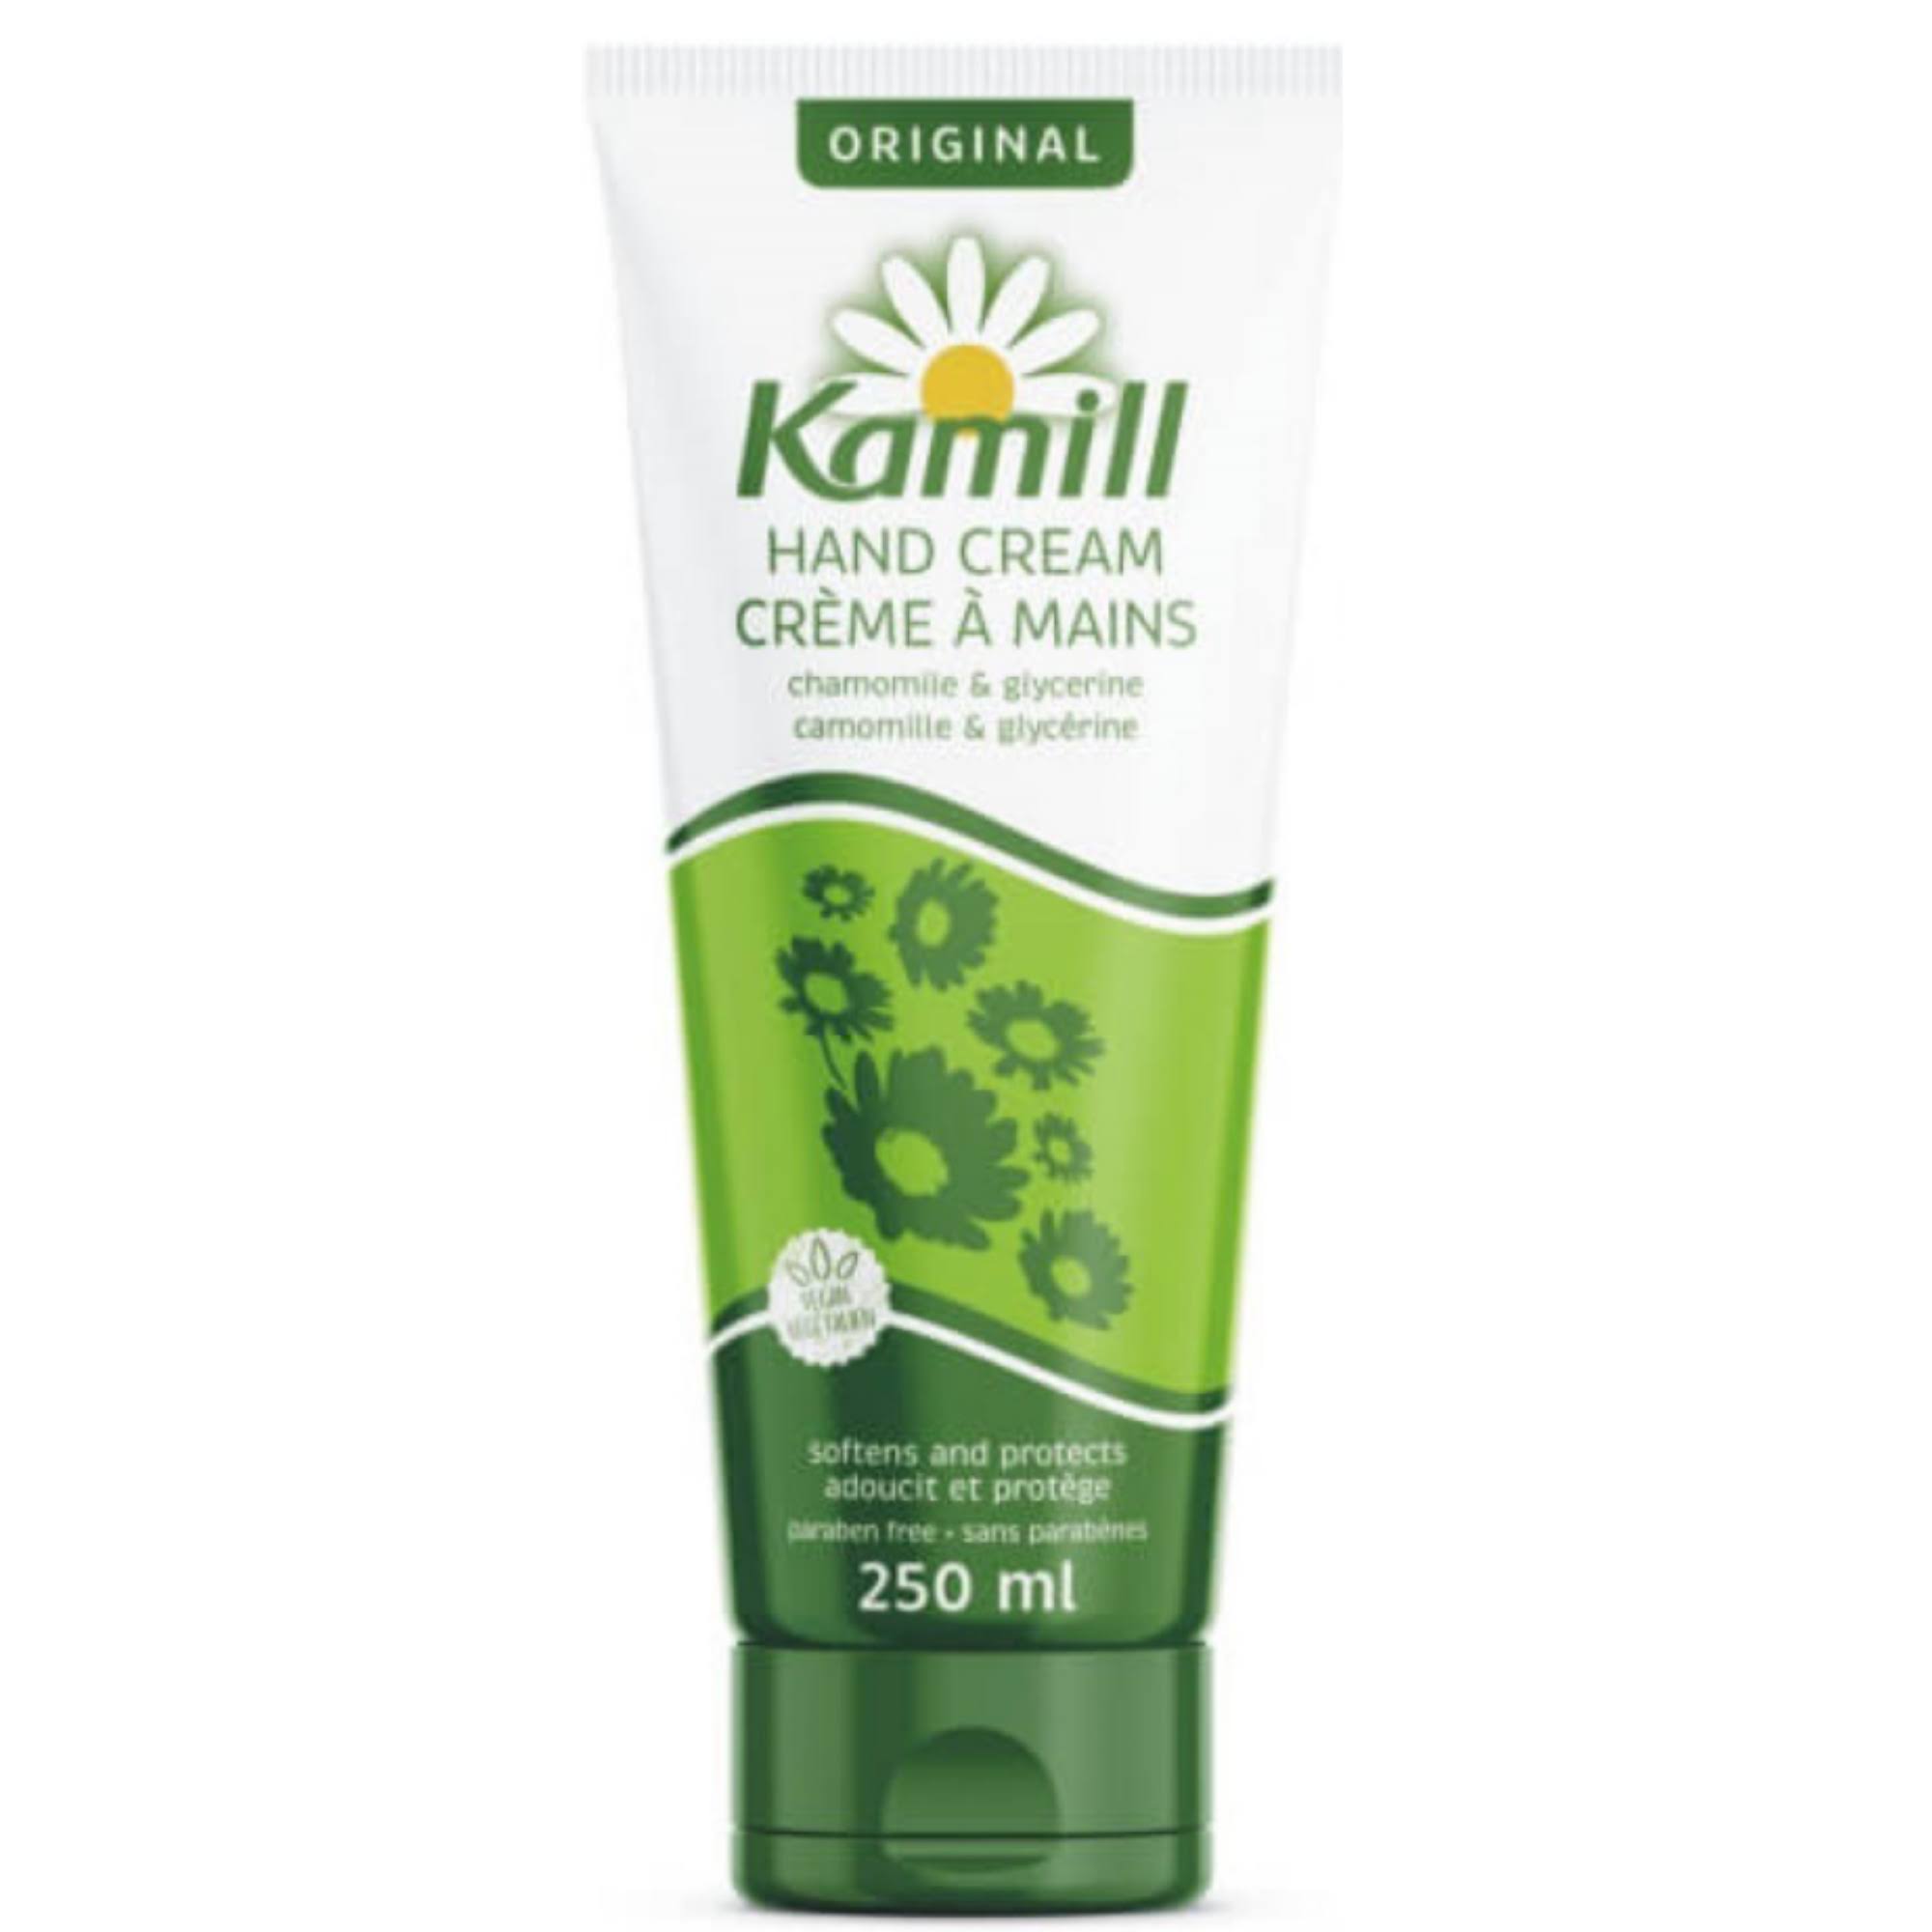 Kamill Hand Cream - Original, 8.5oz